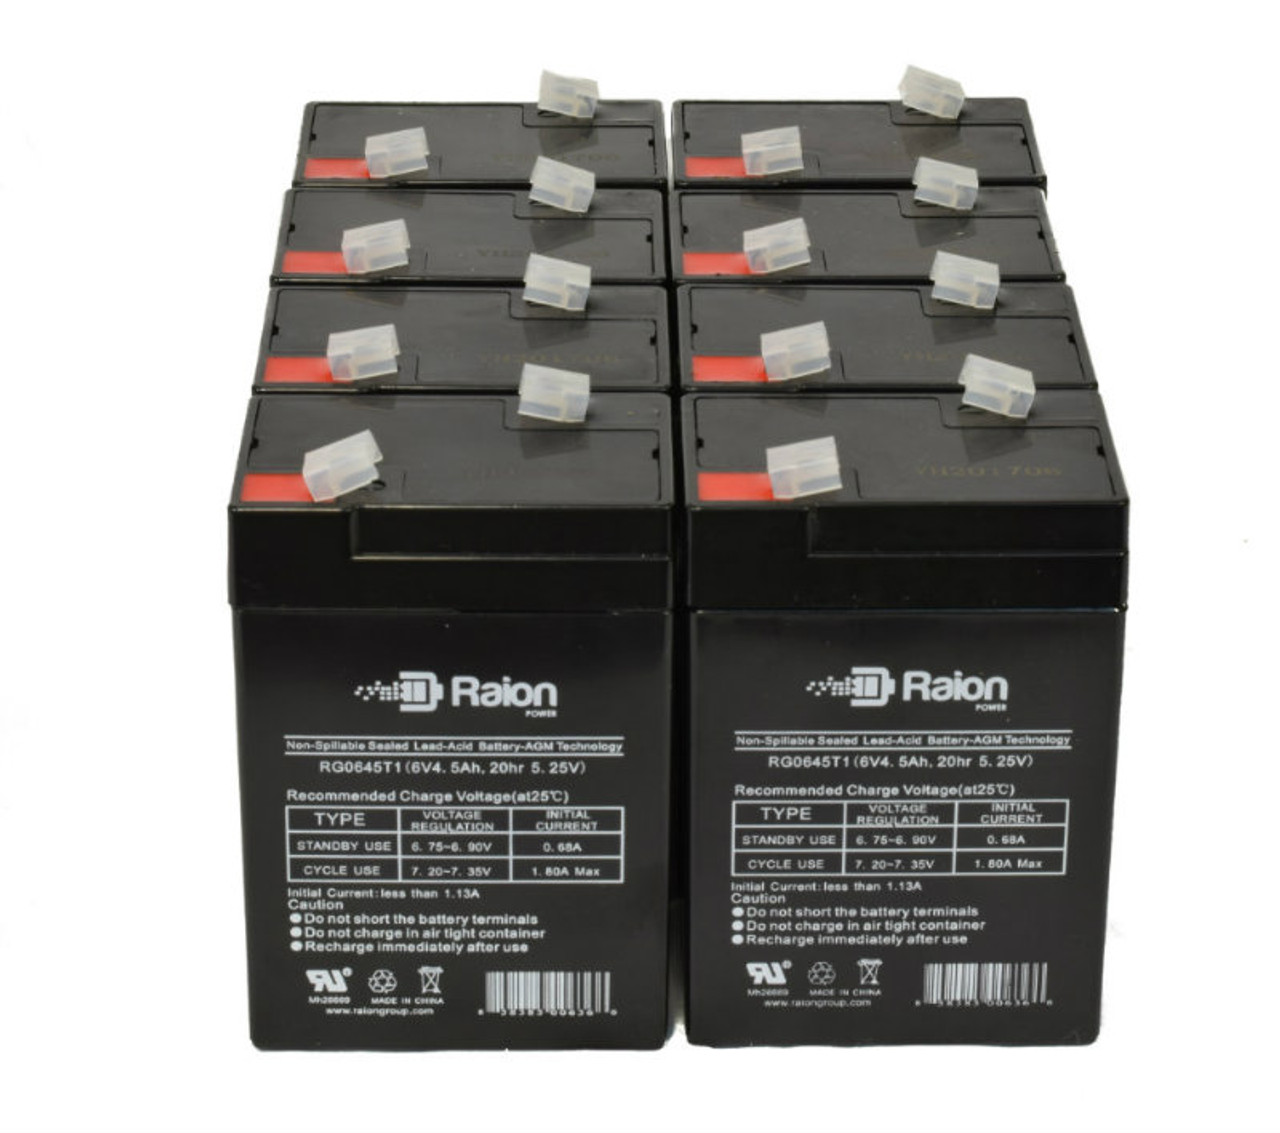 Raion Power 6V 4.5Ah Replacement Emergency Light Battery for Emergi-Lite PMP6V5 - 8 Pack